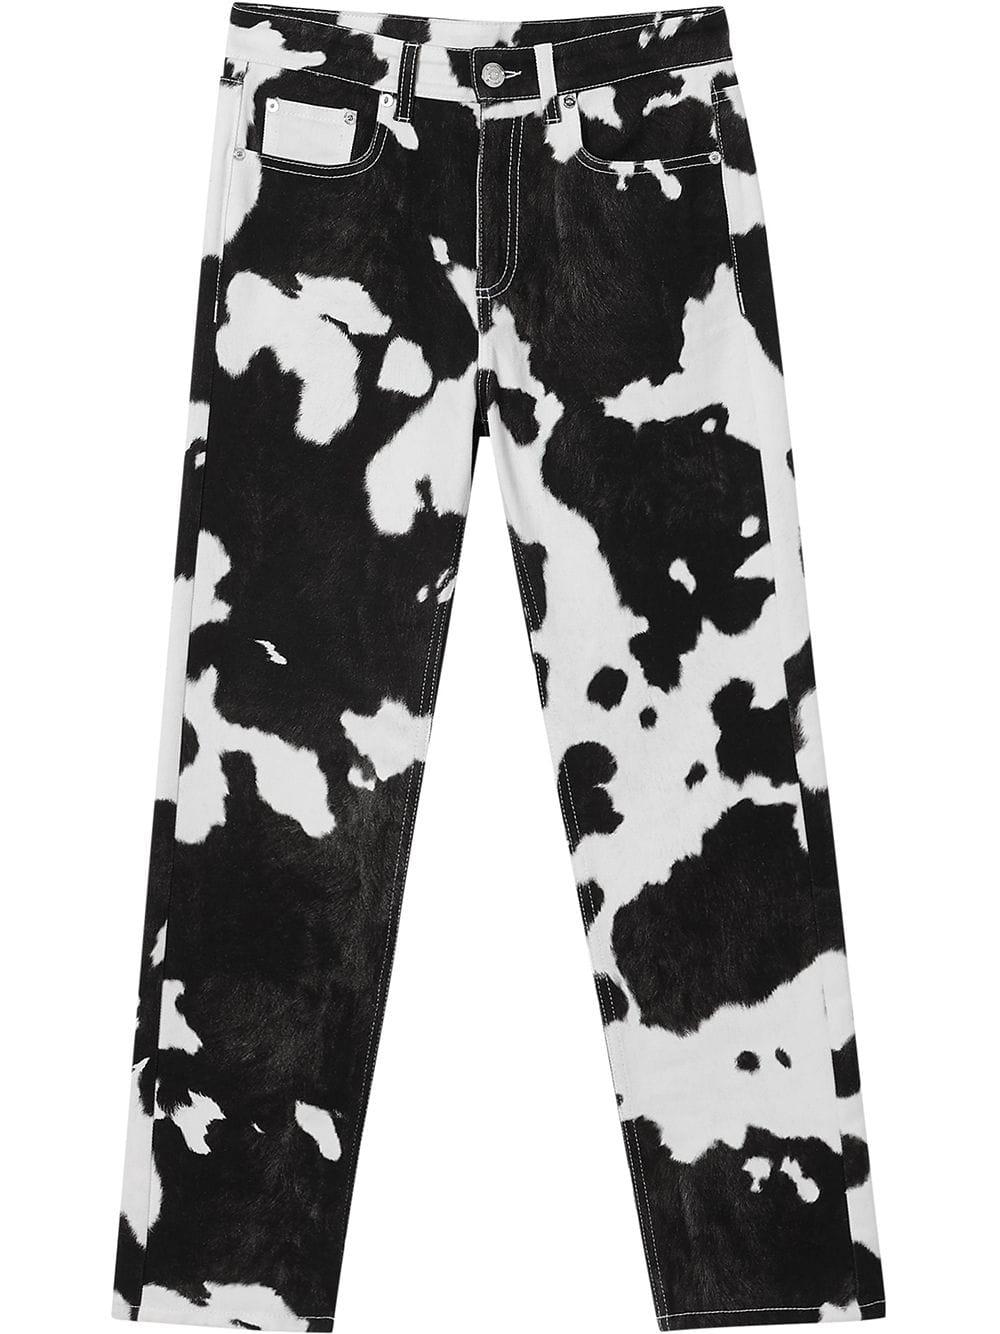 Burberry Monochrome Cow Print Denim Slim Fit Jeans S Waist 25 Burberry